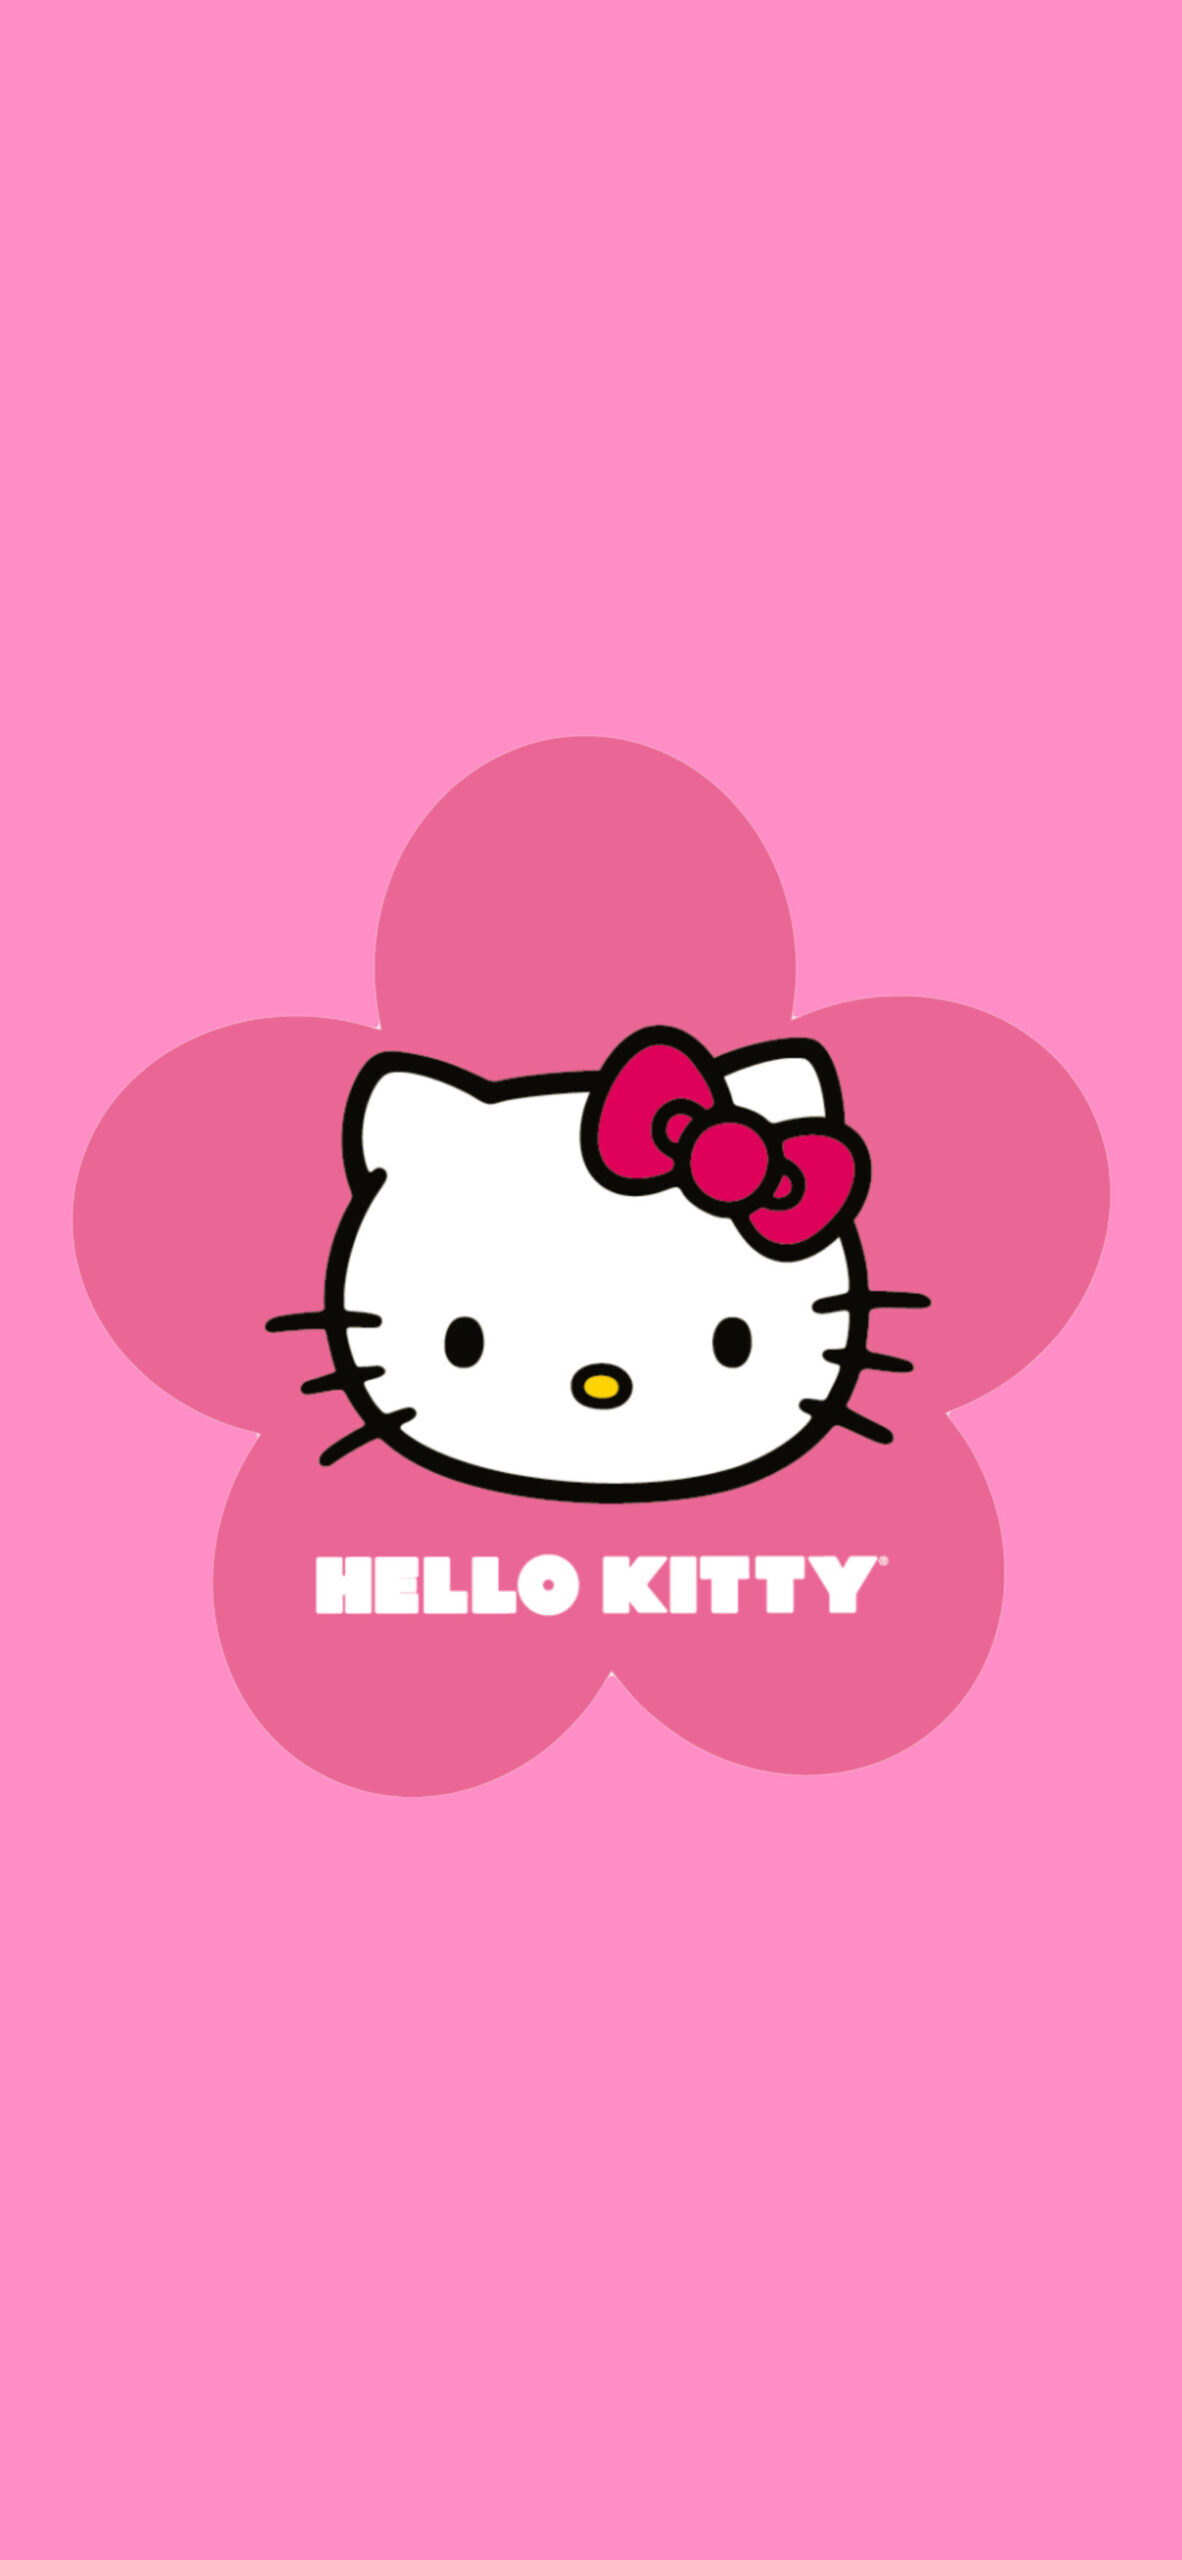 hinh nen hello kitty 005